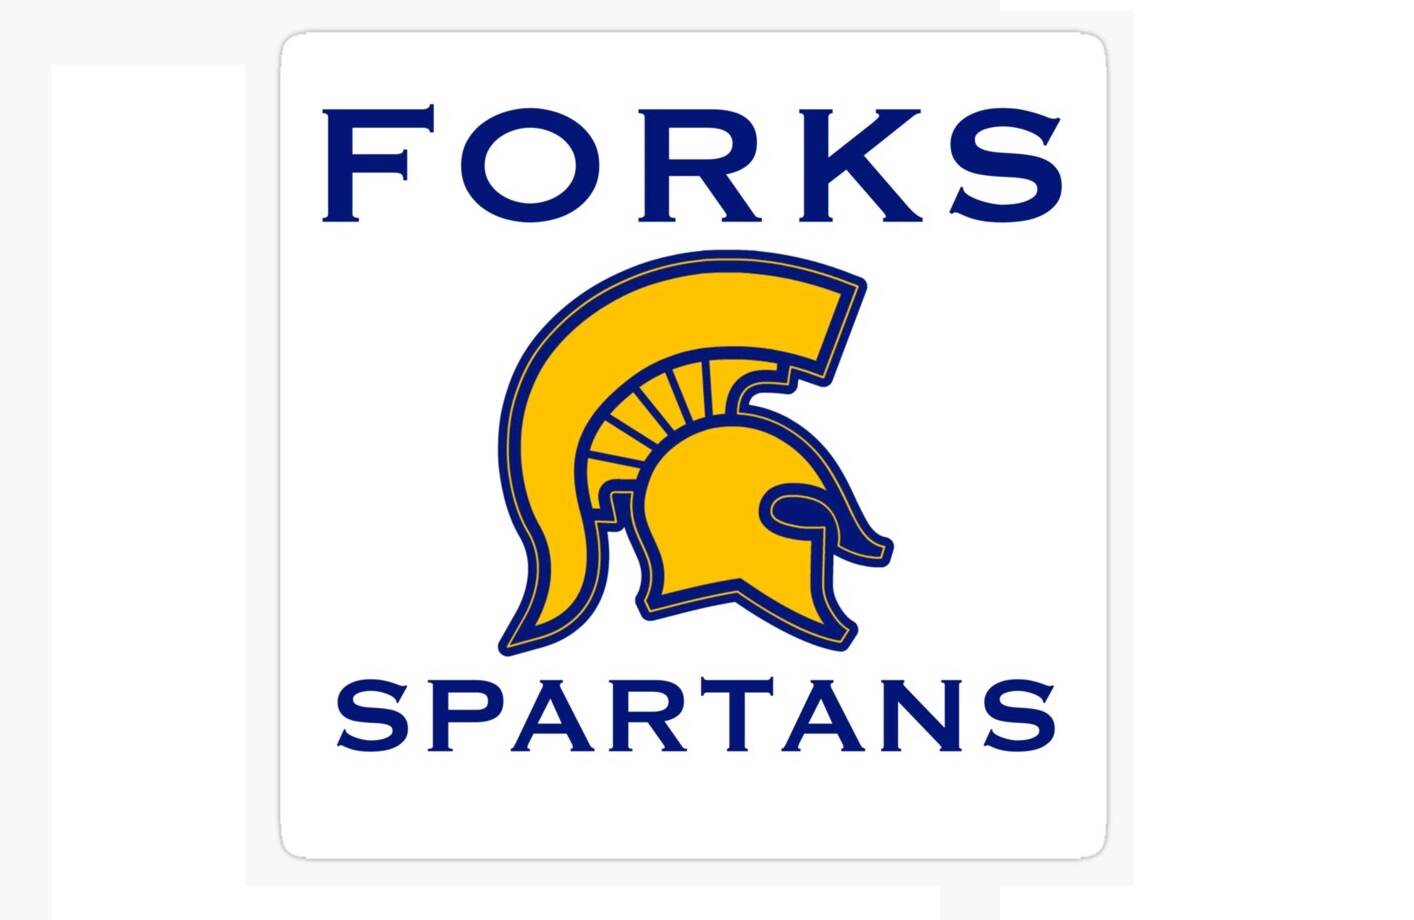 Forks Spartans.